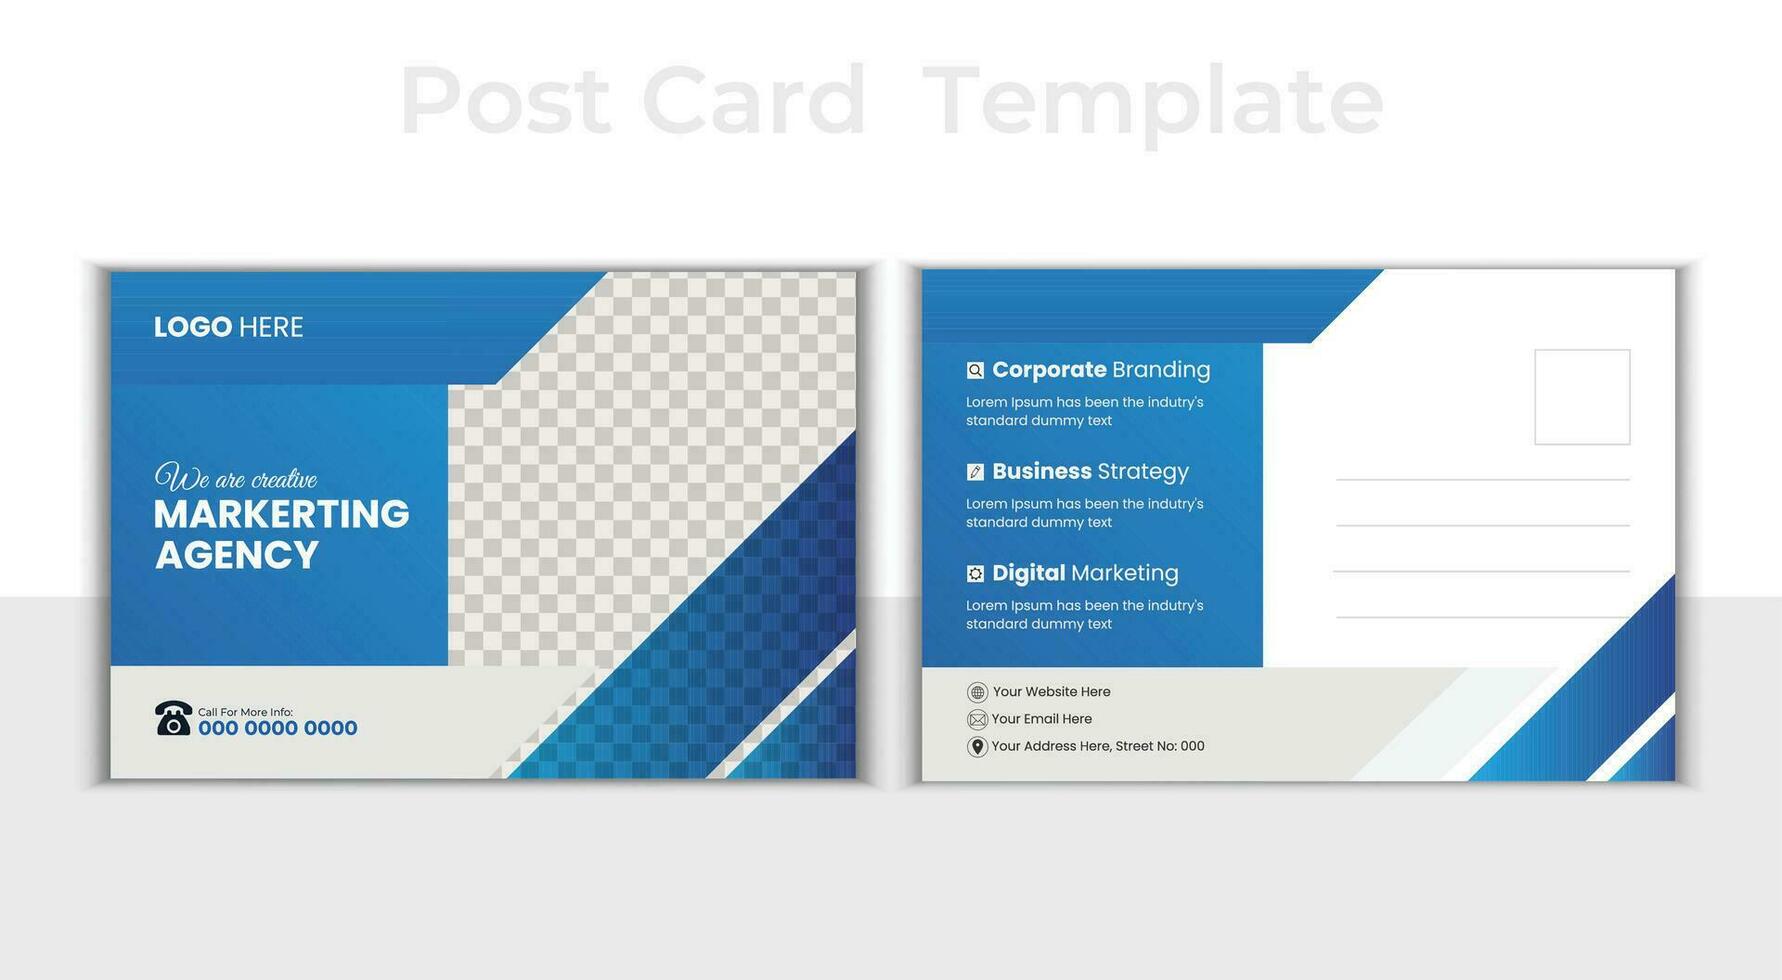 criativo moderno corporativo cartão postal Projeto. o negócio cartão postal , evento cartão, direto enviar eddm, convite Projeto modelo. vetor